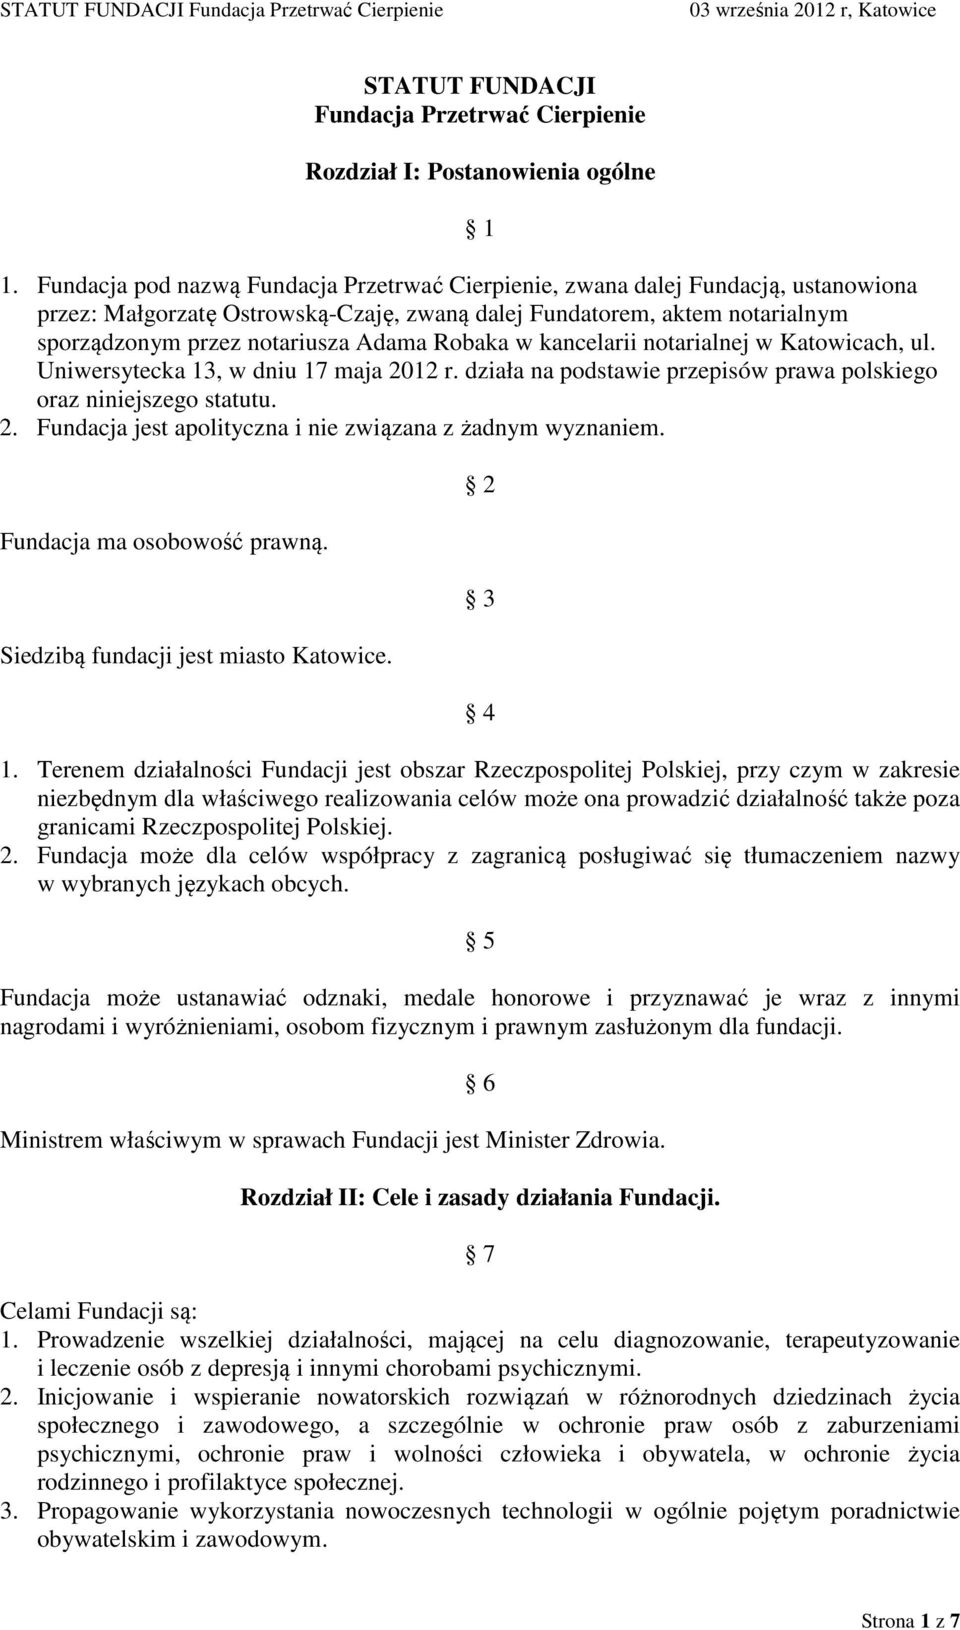 Robaka w kancelarii notarialnej w Katowicach, ul. Uniwersytecka 13, w dniu 17 maja 2012 r. działa na podstawie przepisów prawa polskiego oraz niniejszego statutu. 2. Fundacja jest apolityczna i nie związana z żadnym wyznaniem.